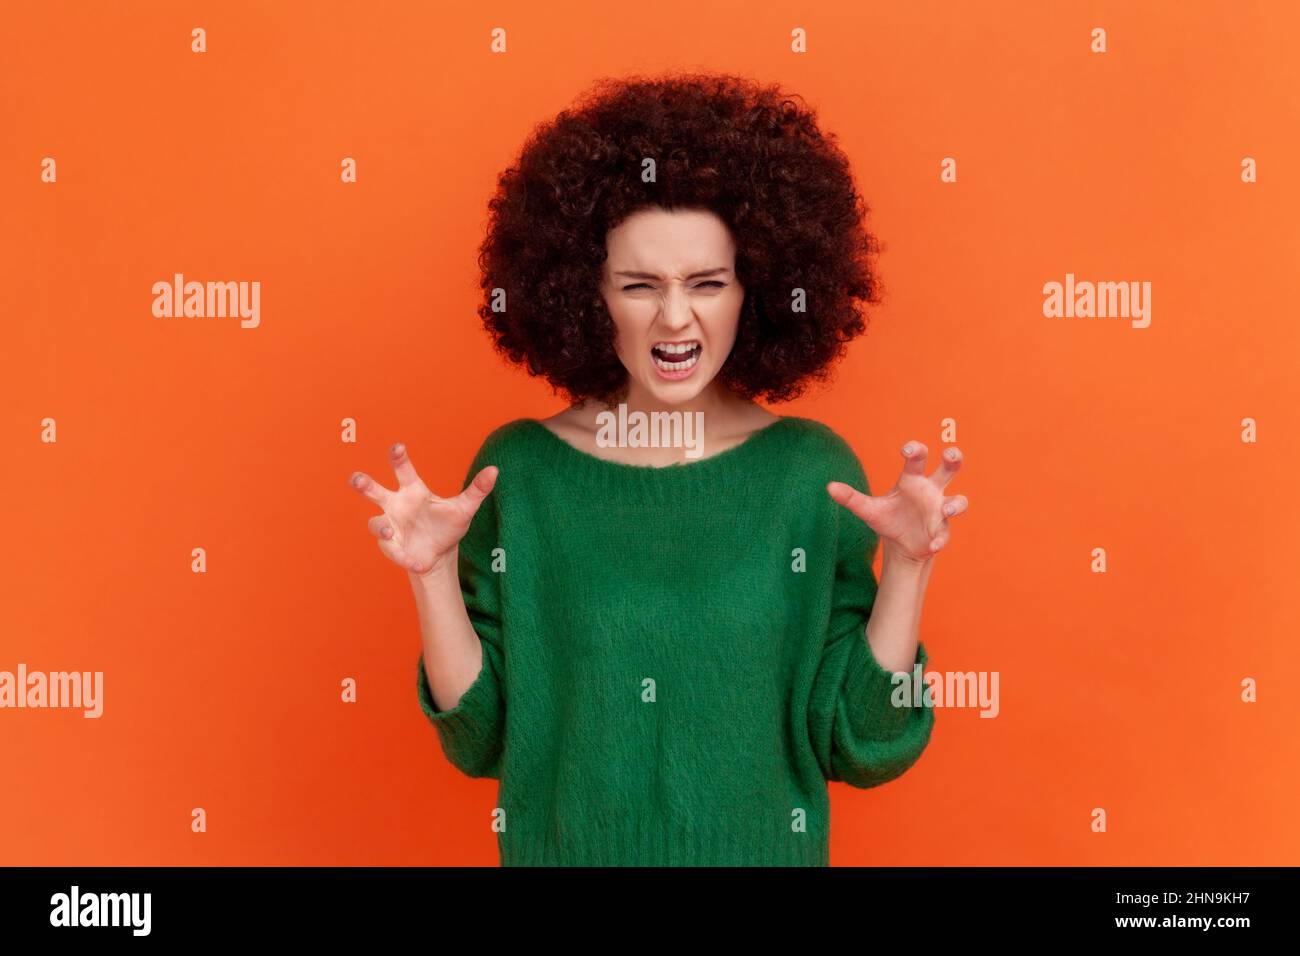 Porträt einer wütenden Frau mit Afro-Frisur, die einen grünen Pullover im lässigen Stil trägt, der aggressive Emotionen, erhobene Arme und Schreie ausdrückt. Innenaufnahme des Studios isoliert auf orangefarbenem Hintergrund. Stockfoto